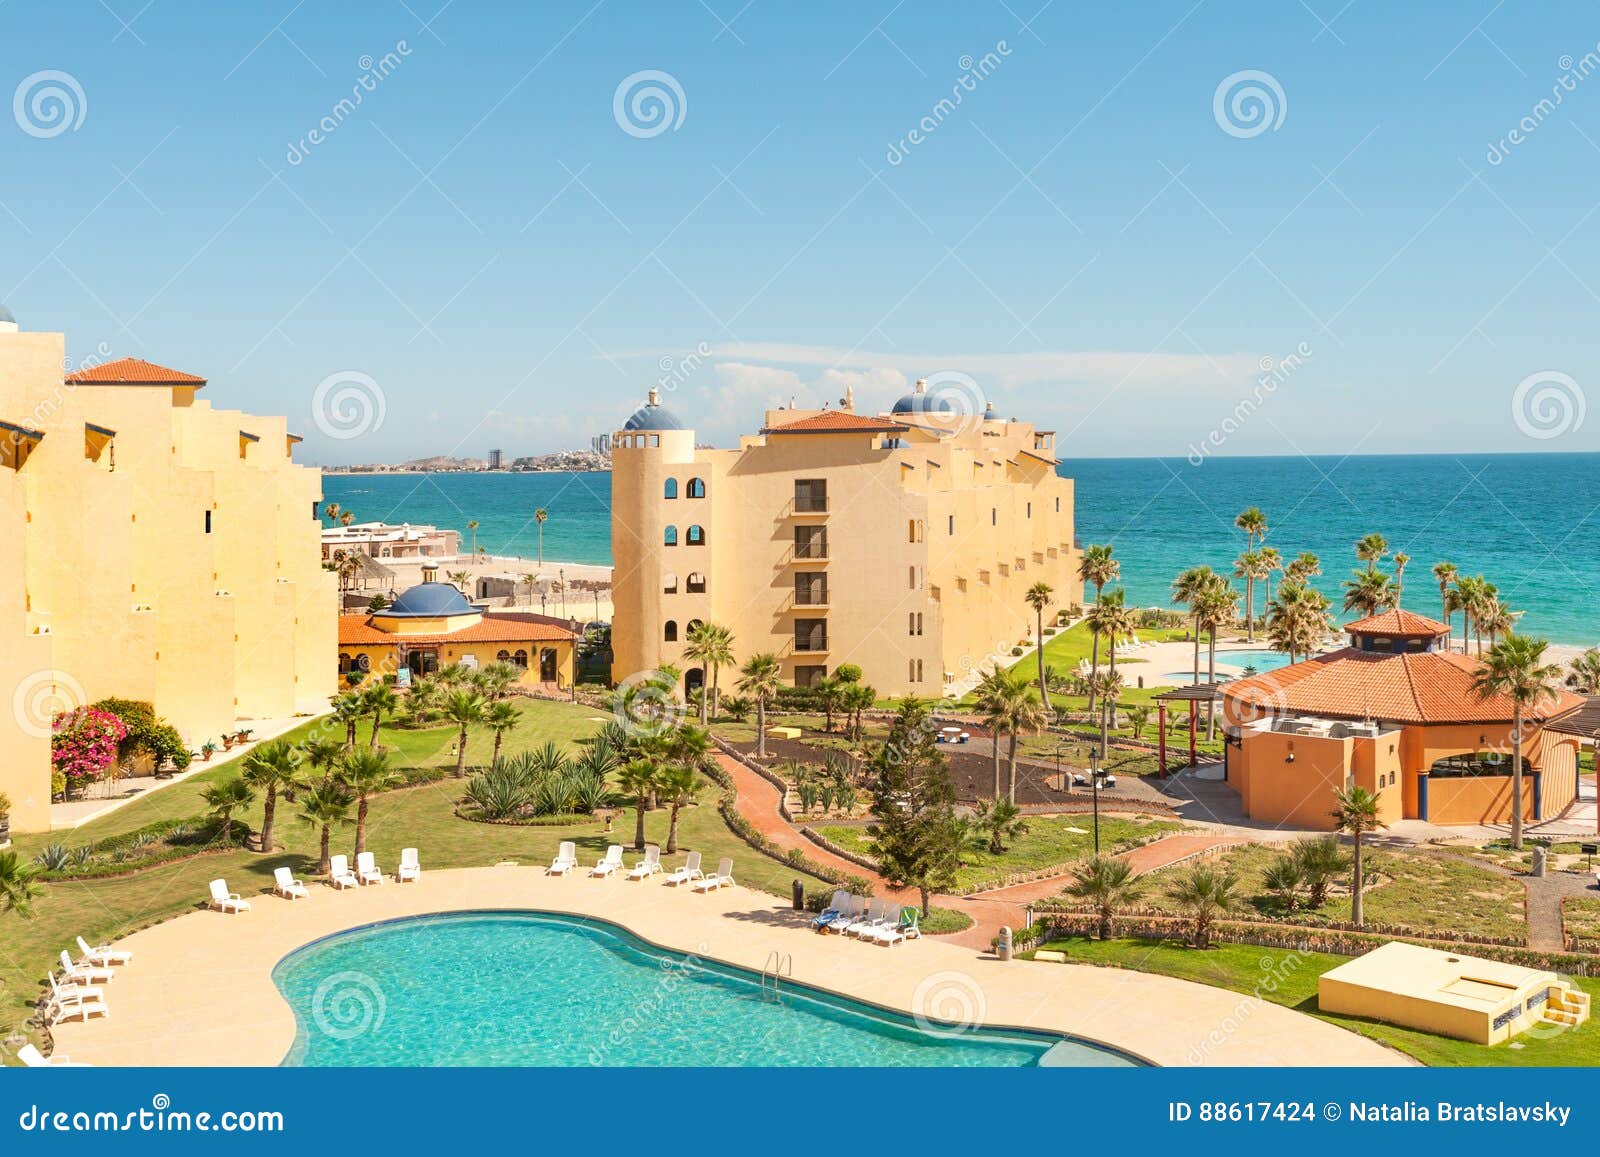 puerto penasco, popular holiday destination